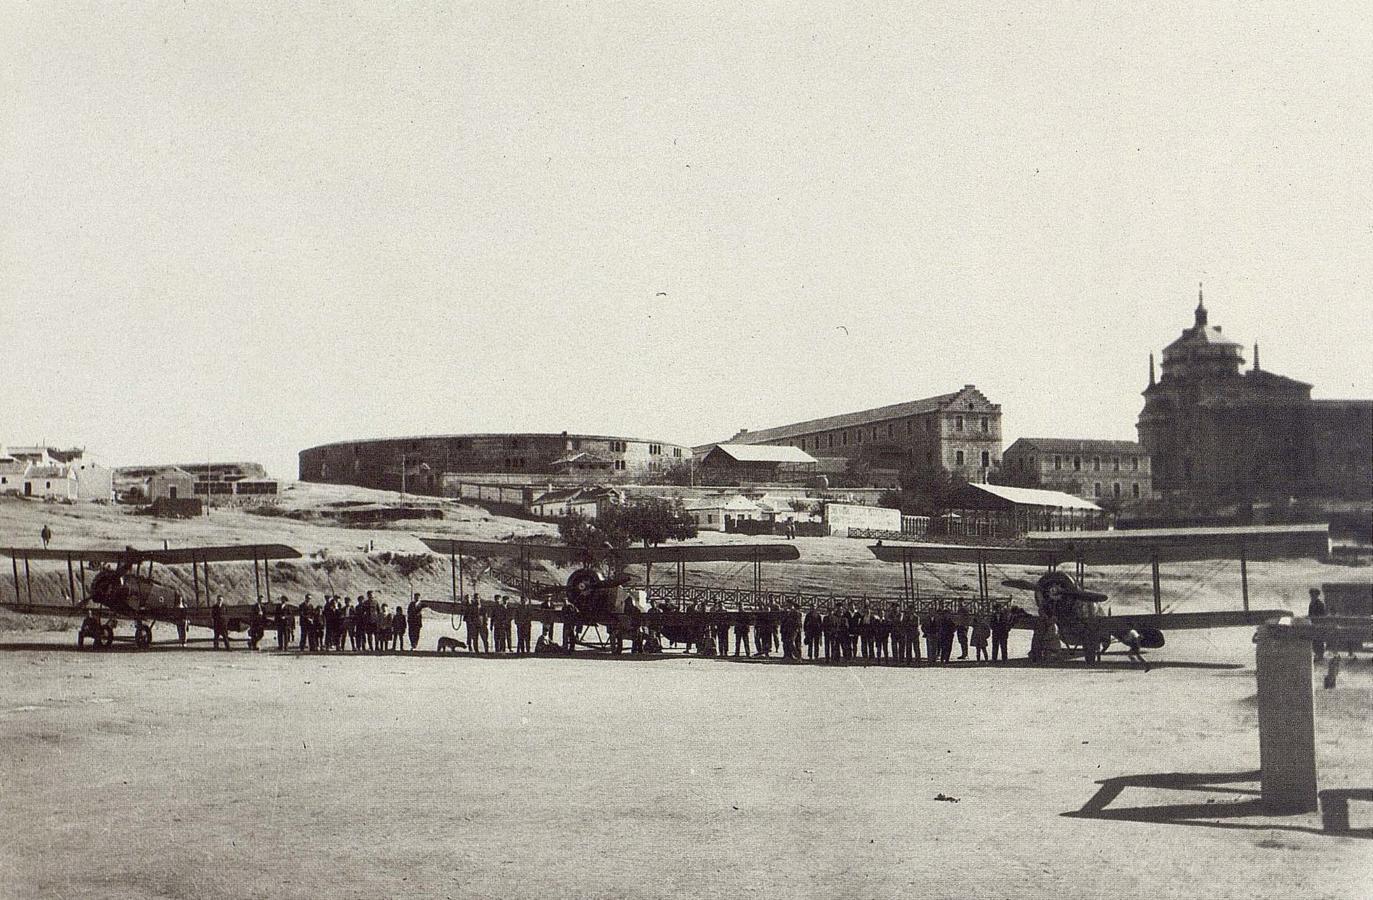 Aviones Avro de la Escuela de Alcalá de Henares en el Polígono de Tiro de Toledo el 25 de octubre de 1924. Fotografía de Rodríguez. Archivo Histórico Provincial de Toledo